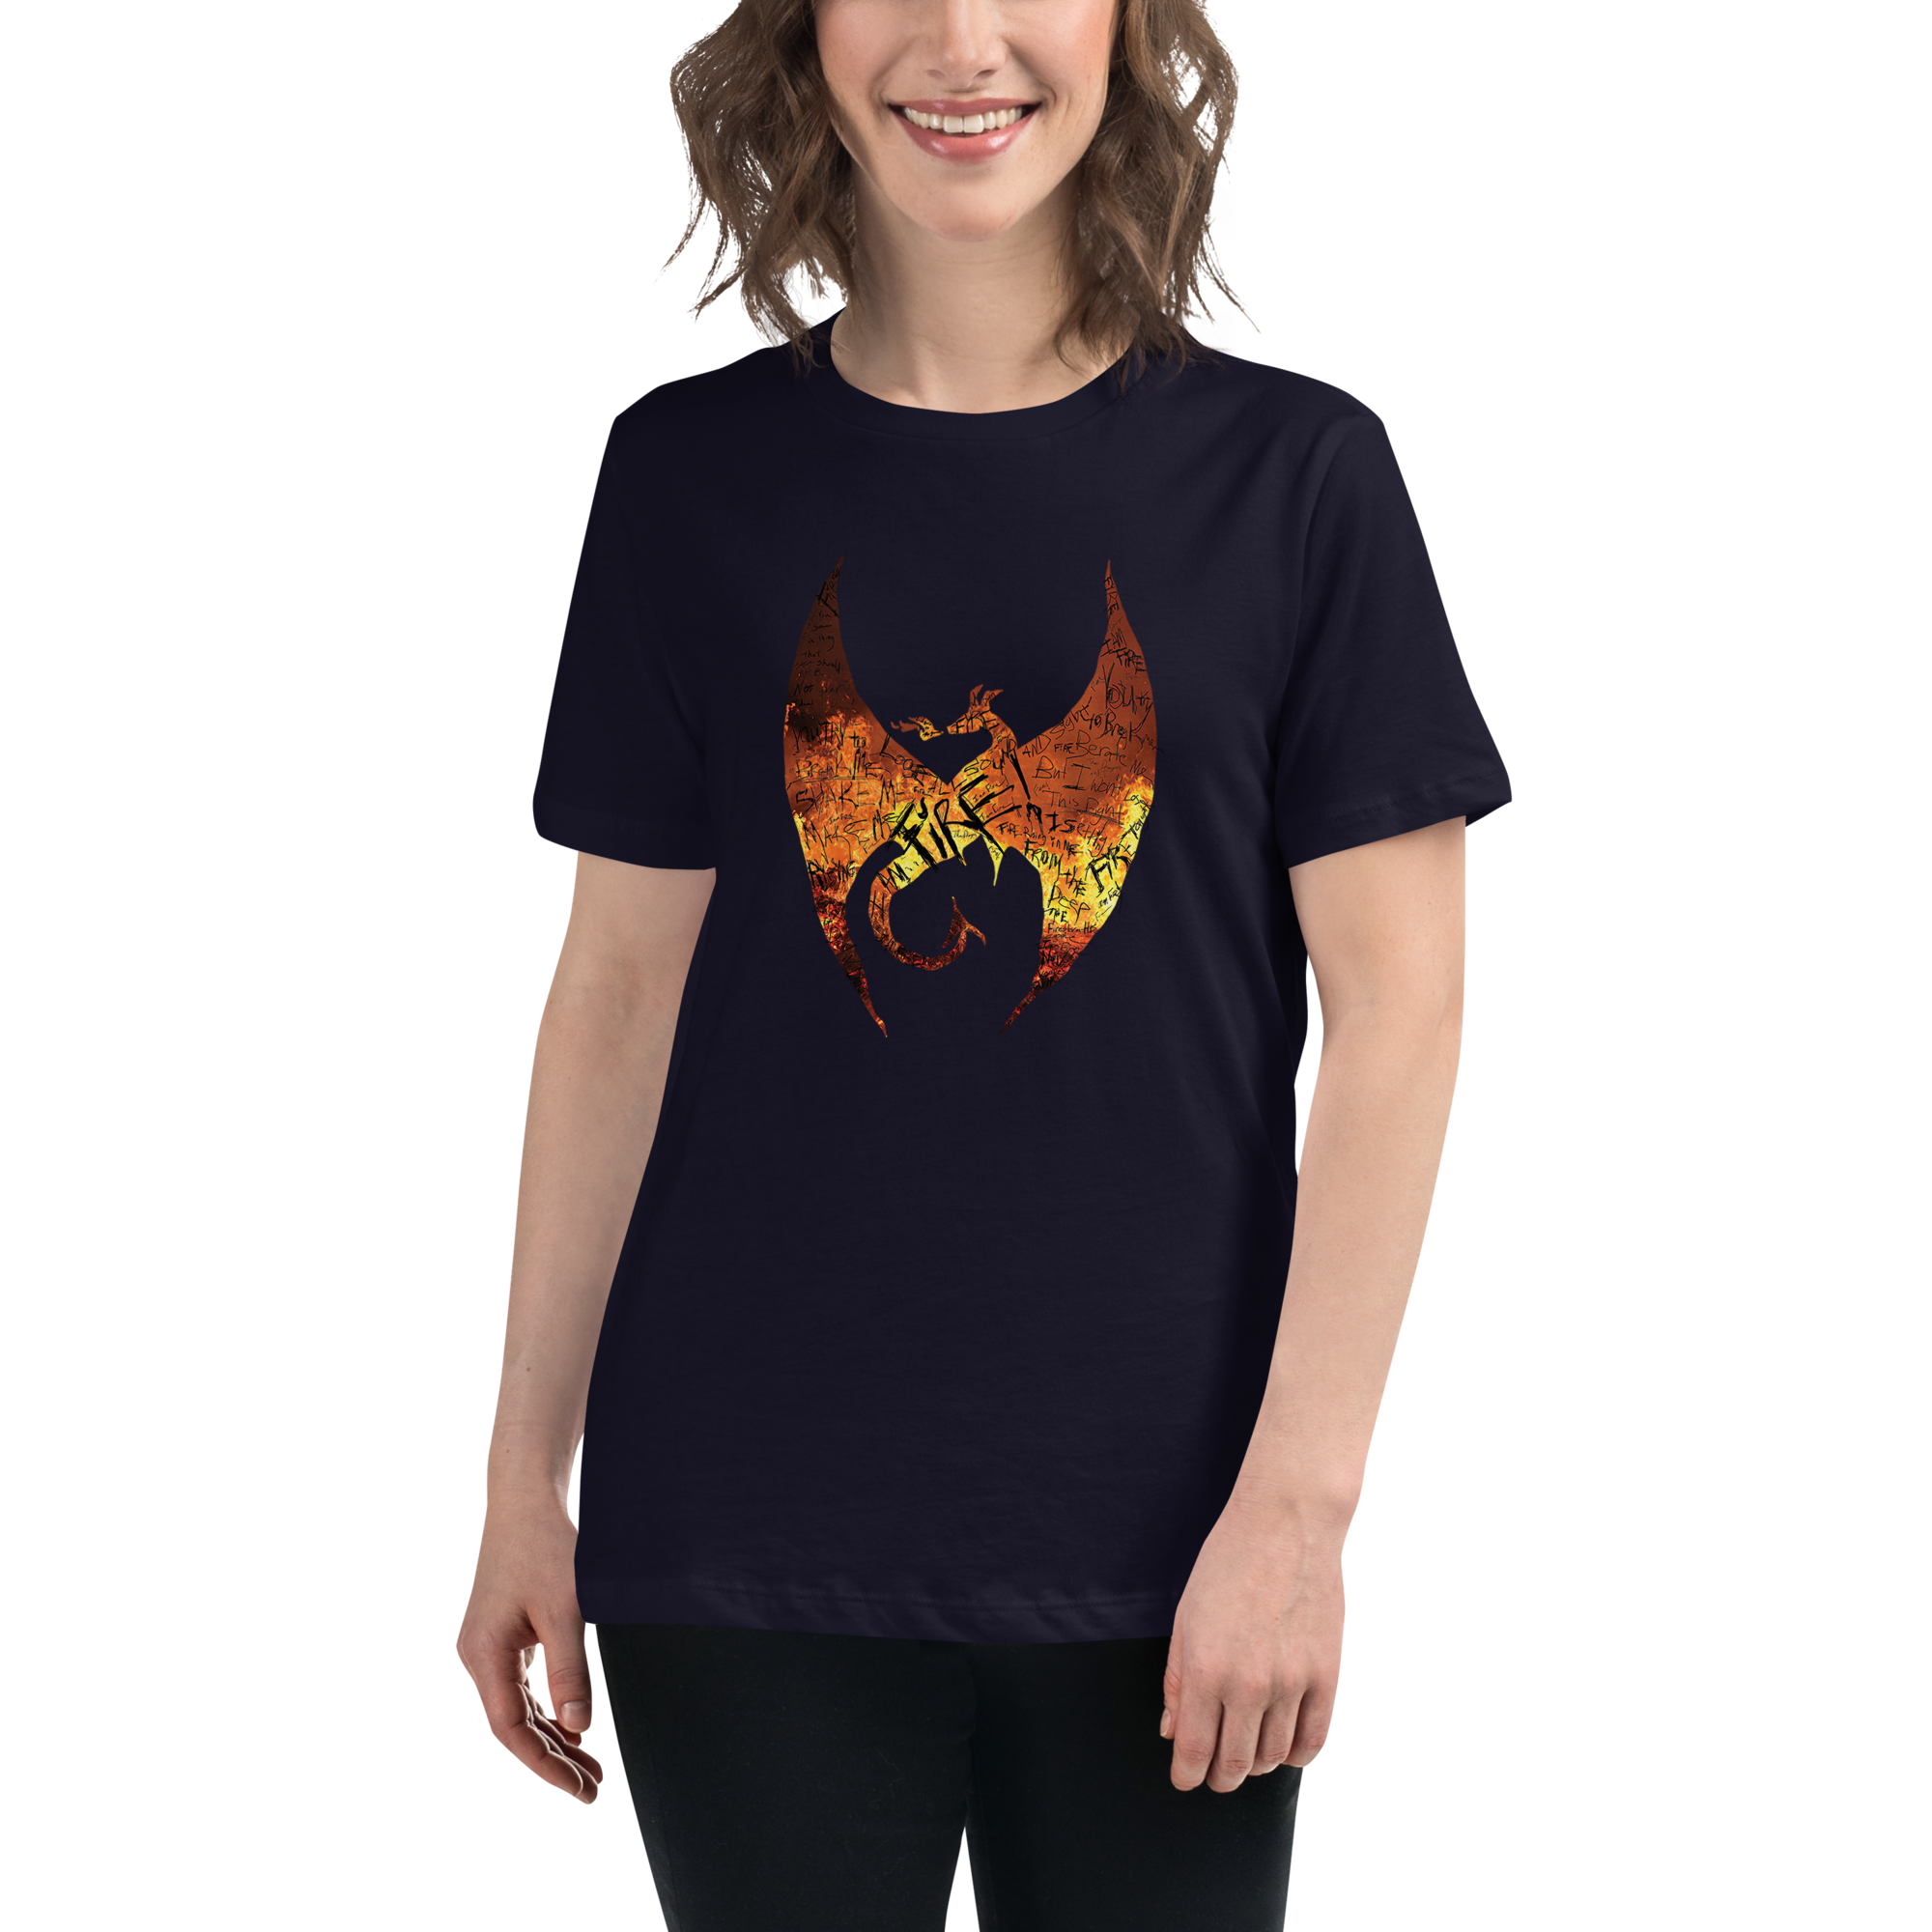 FIRE! Women's Relaxed T-Shirt